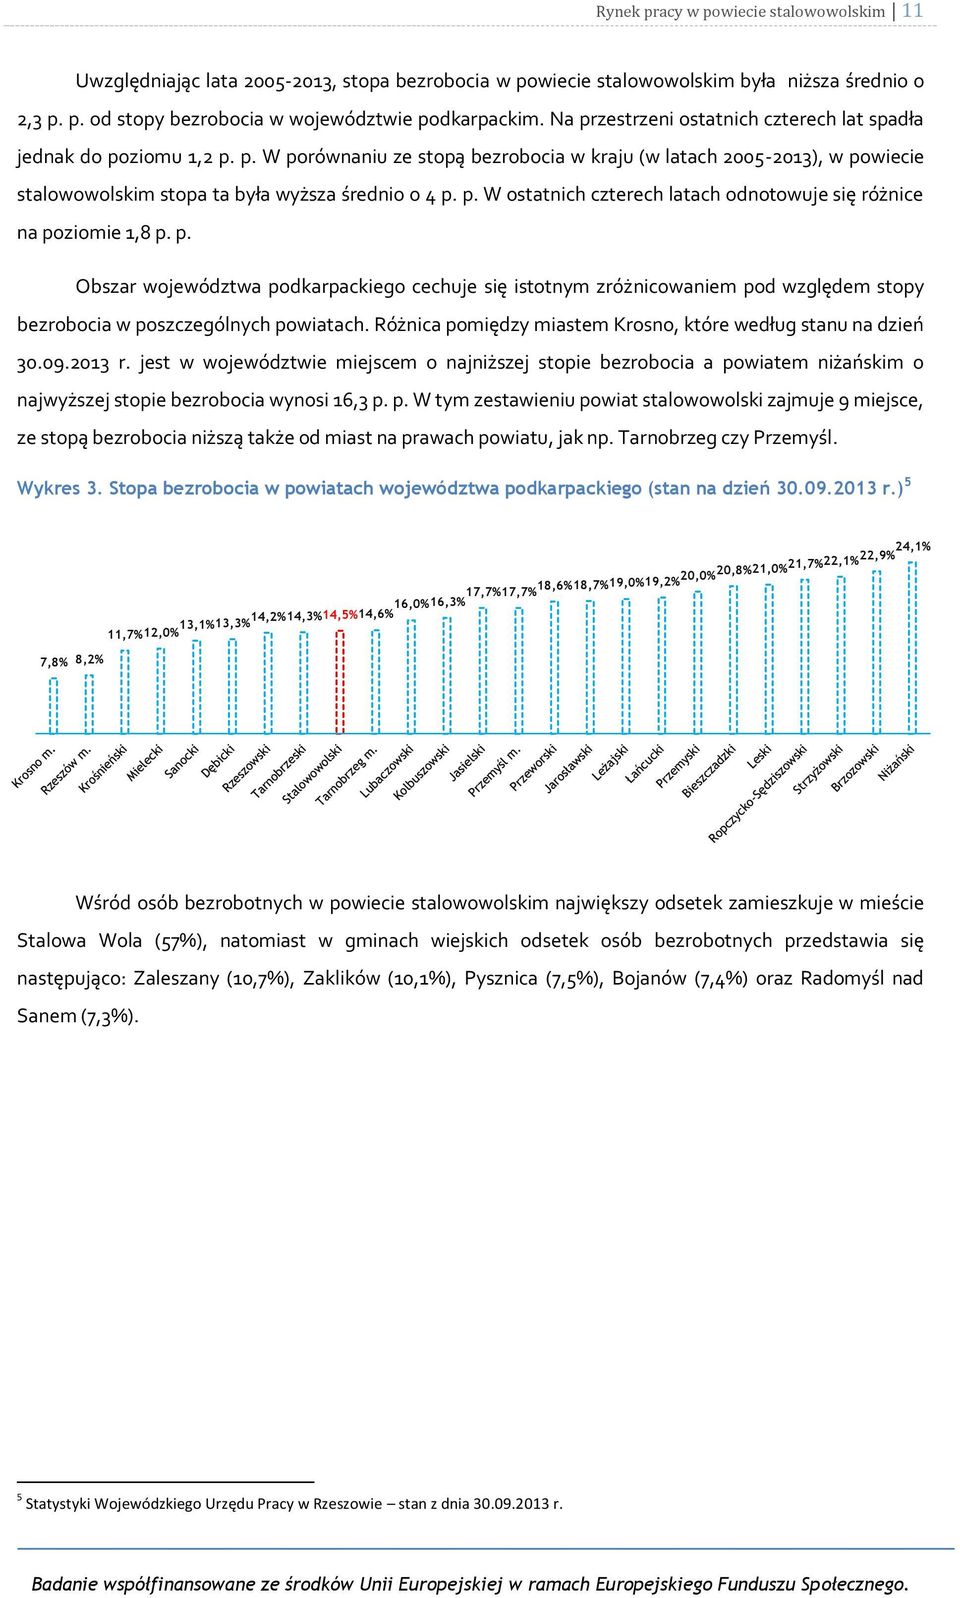 p. Obszar województwa podkarpackiego cechuje się istotnym zróżnicowaniem pod względem stopy bezrobocia w poszczególnych powiatach. Różnica pomiędzy miastem Krosno, które według stanu na dzień 30.09.